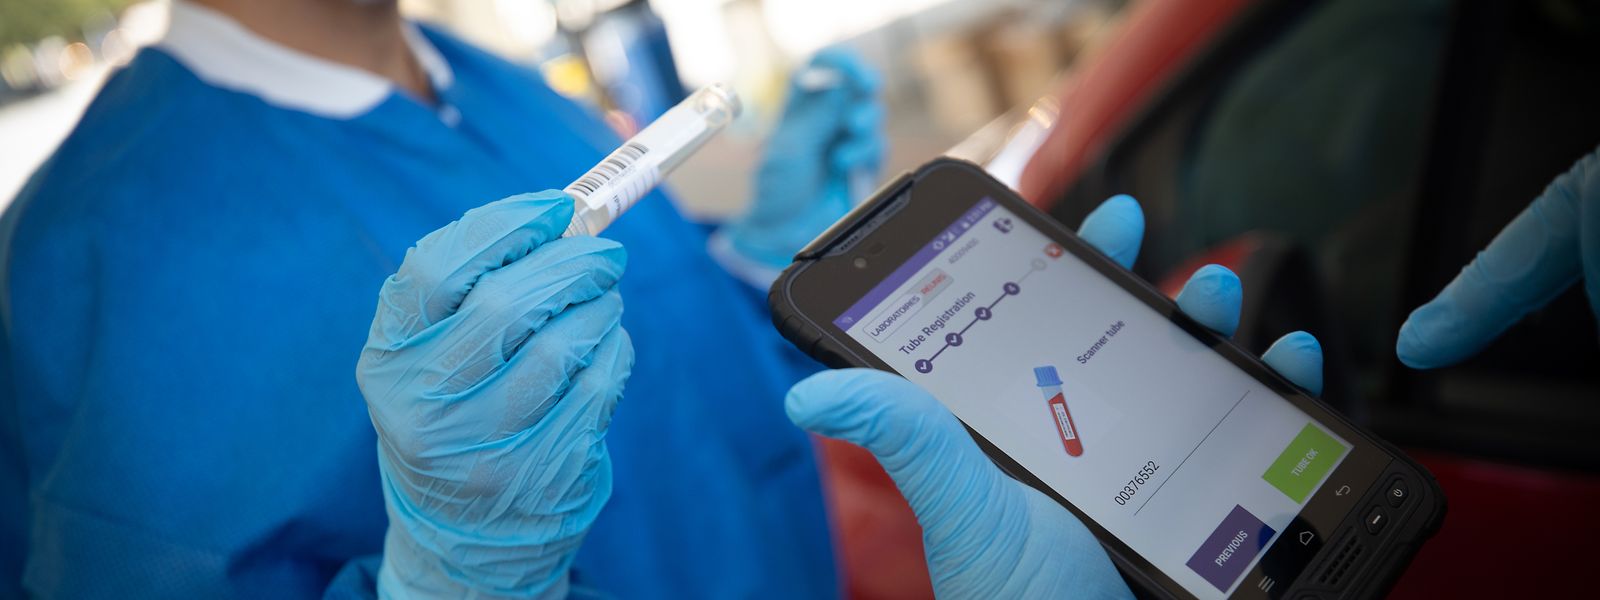 A ce jour sur les 2,8 millions de tests PCR effectués au Luxembourg, 1,7 l'ont été dans le cadre du Large Scale Testing.